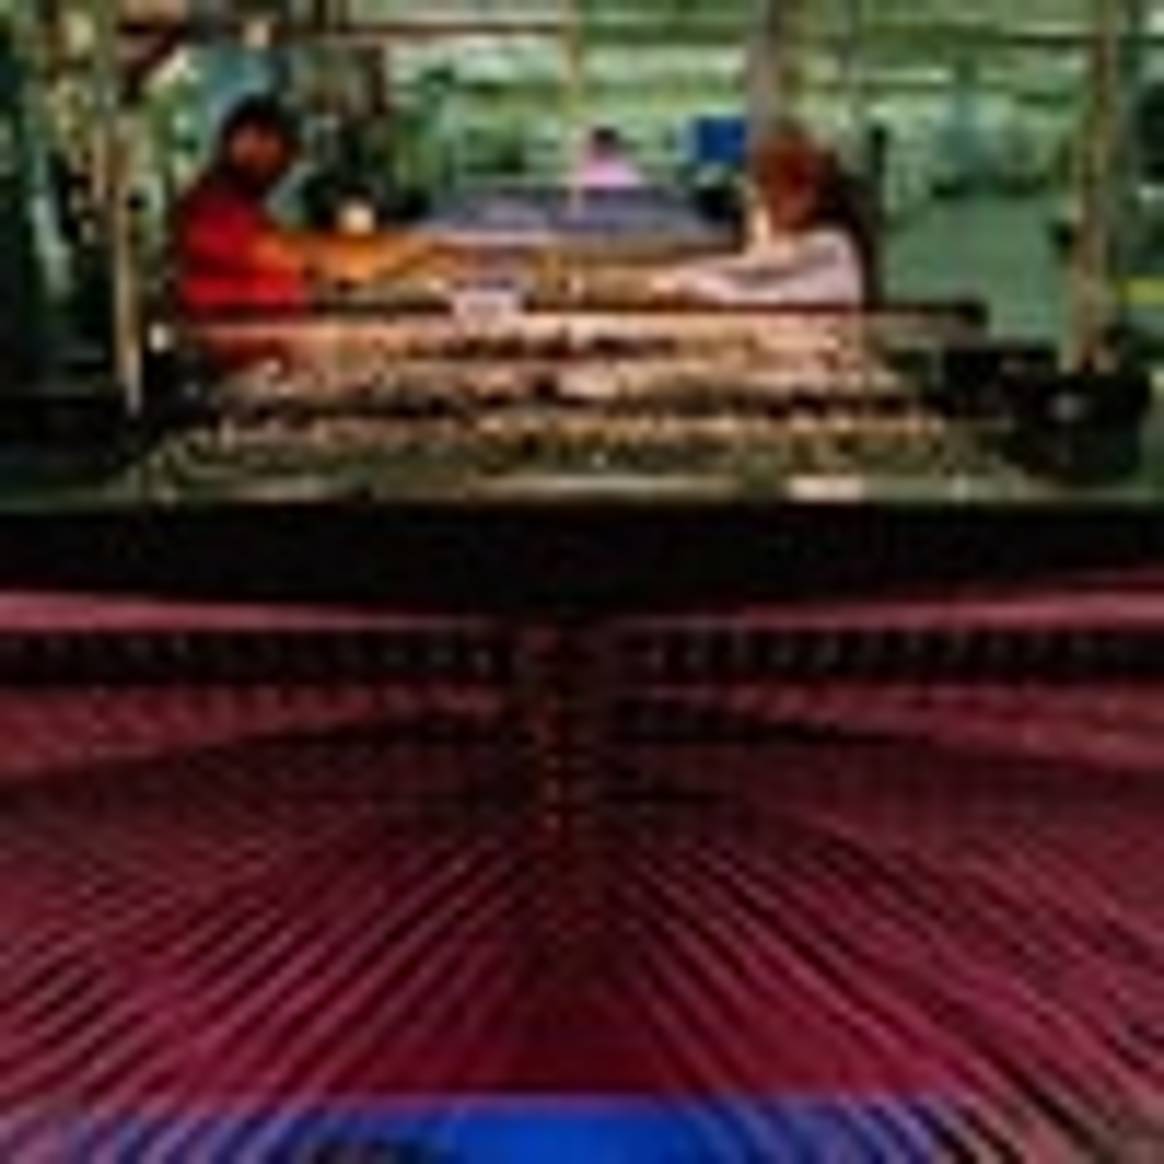 Escasa implantación de Internet en industria textil española